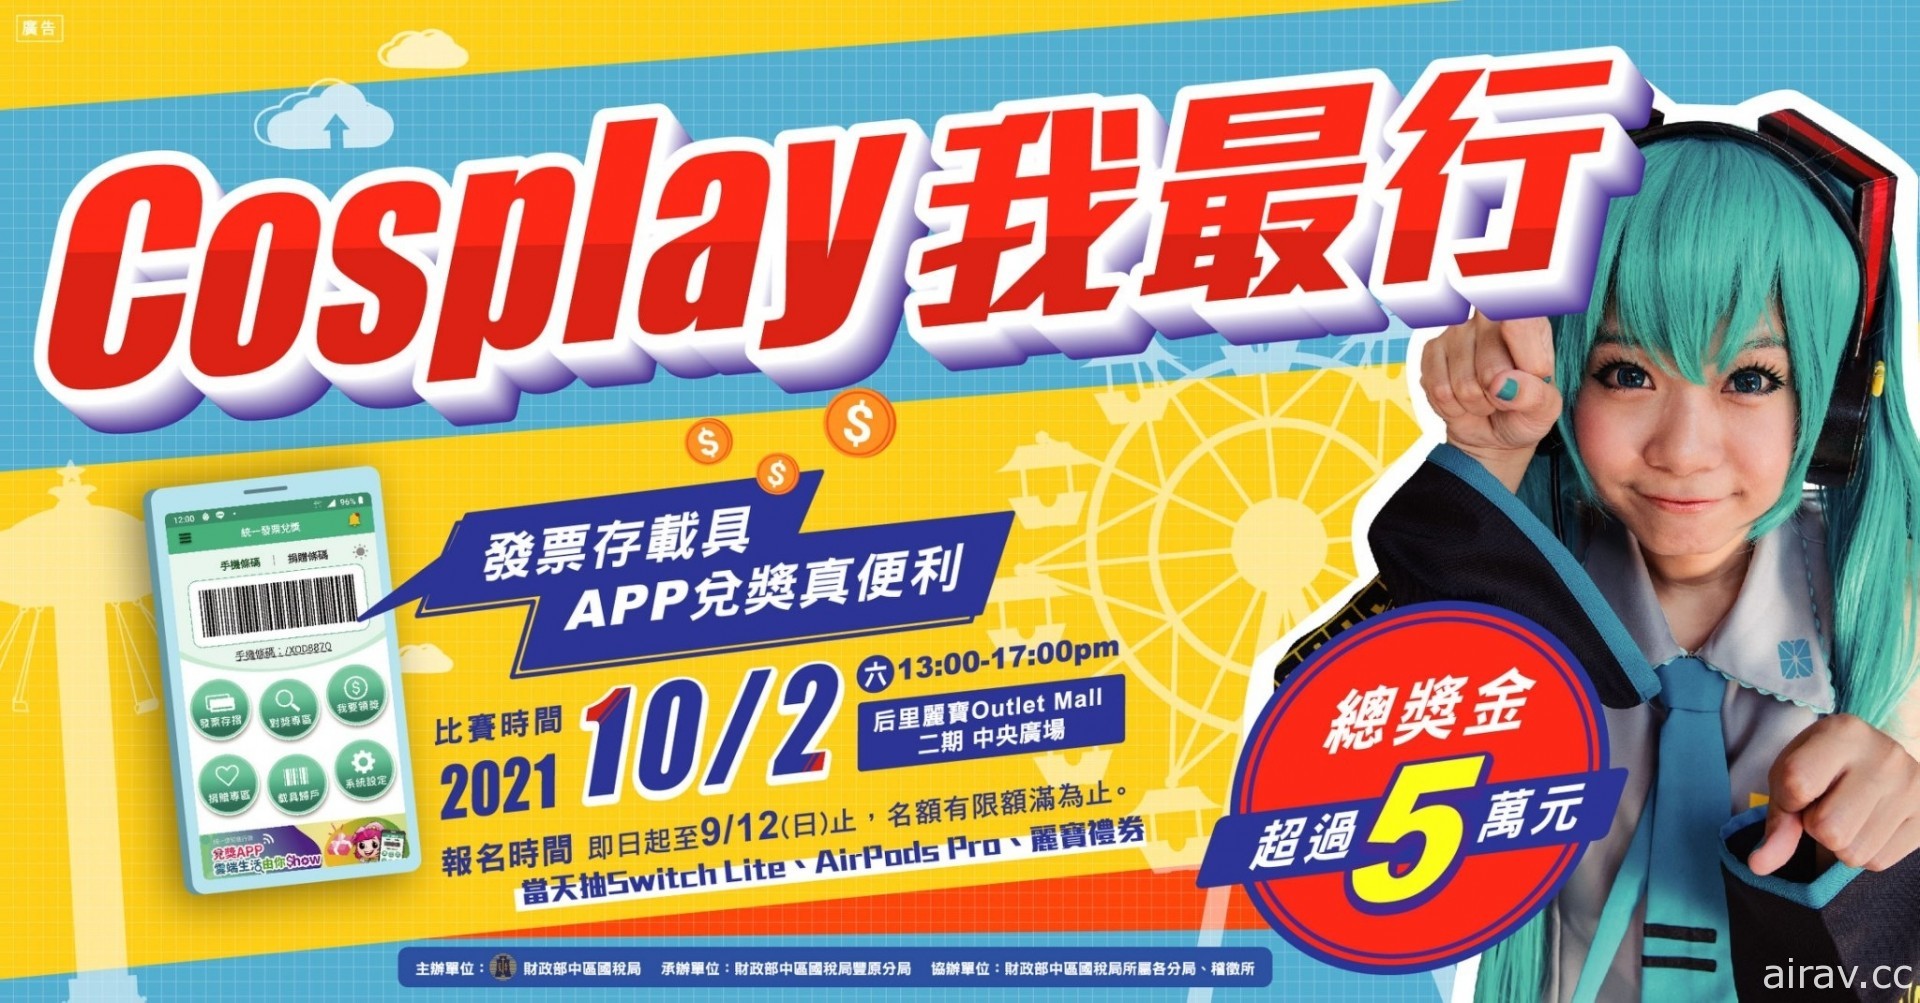 「Cosplay 我最行」競賽 9 月開跑 結合創意宣導 APP 租稅服務措施